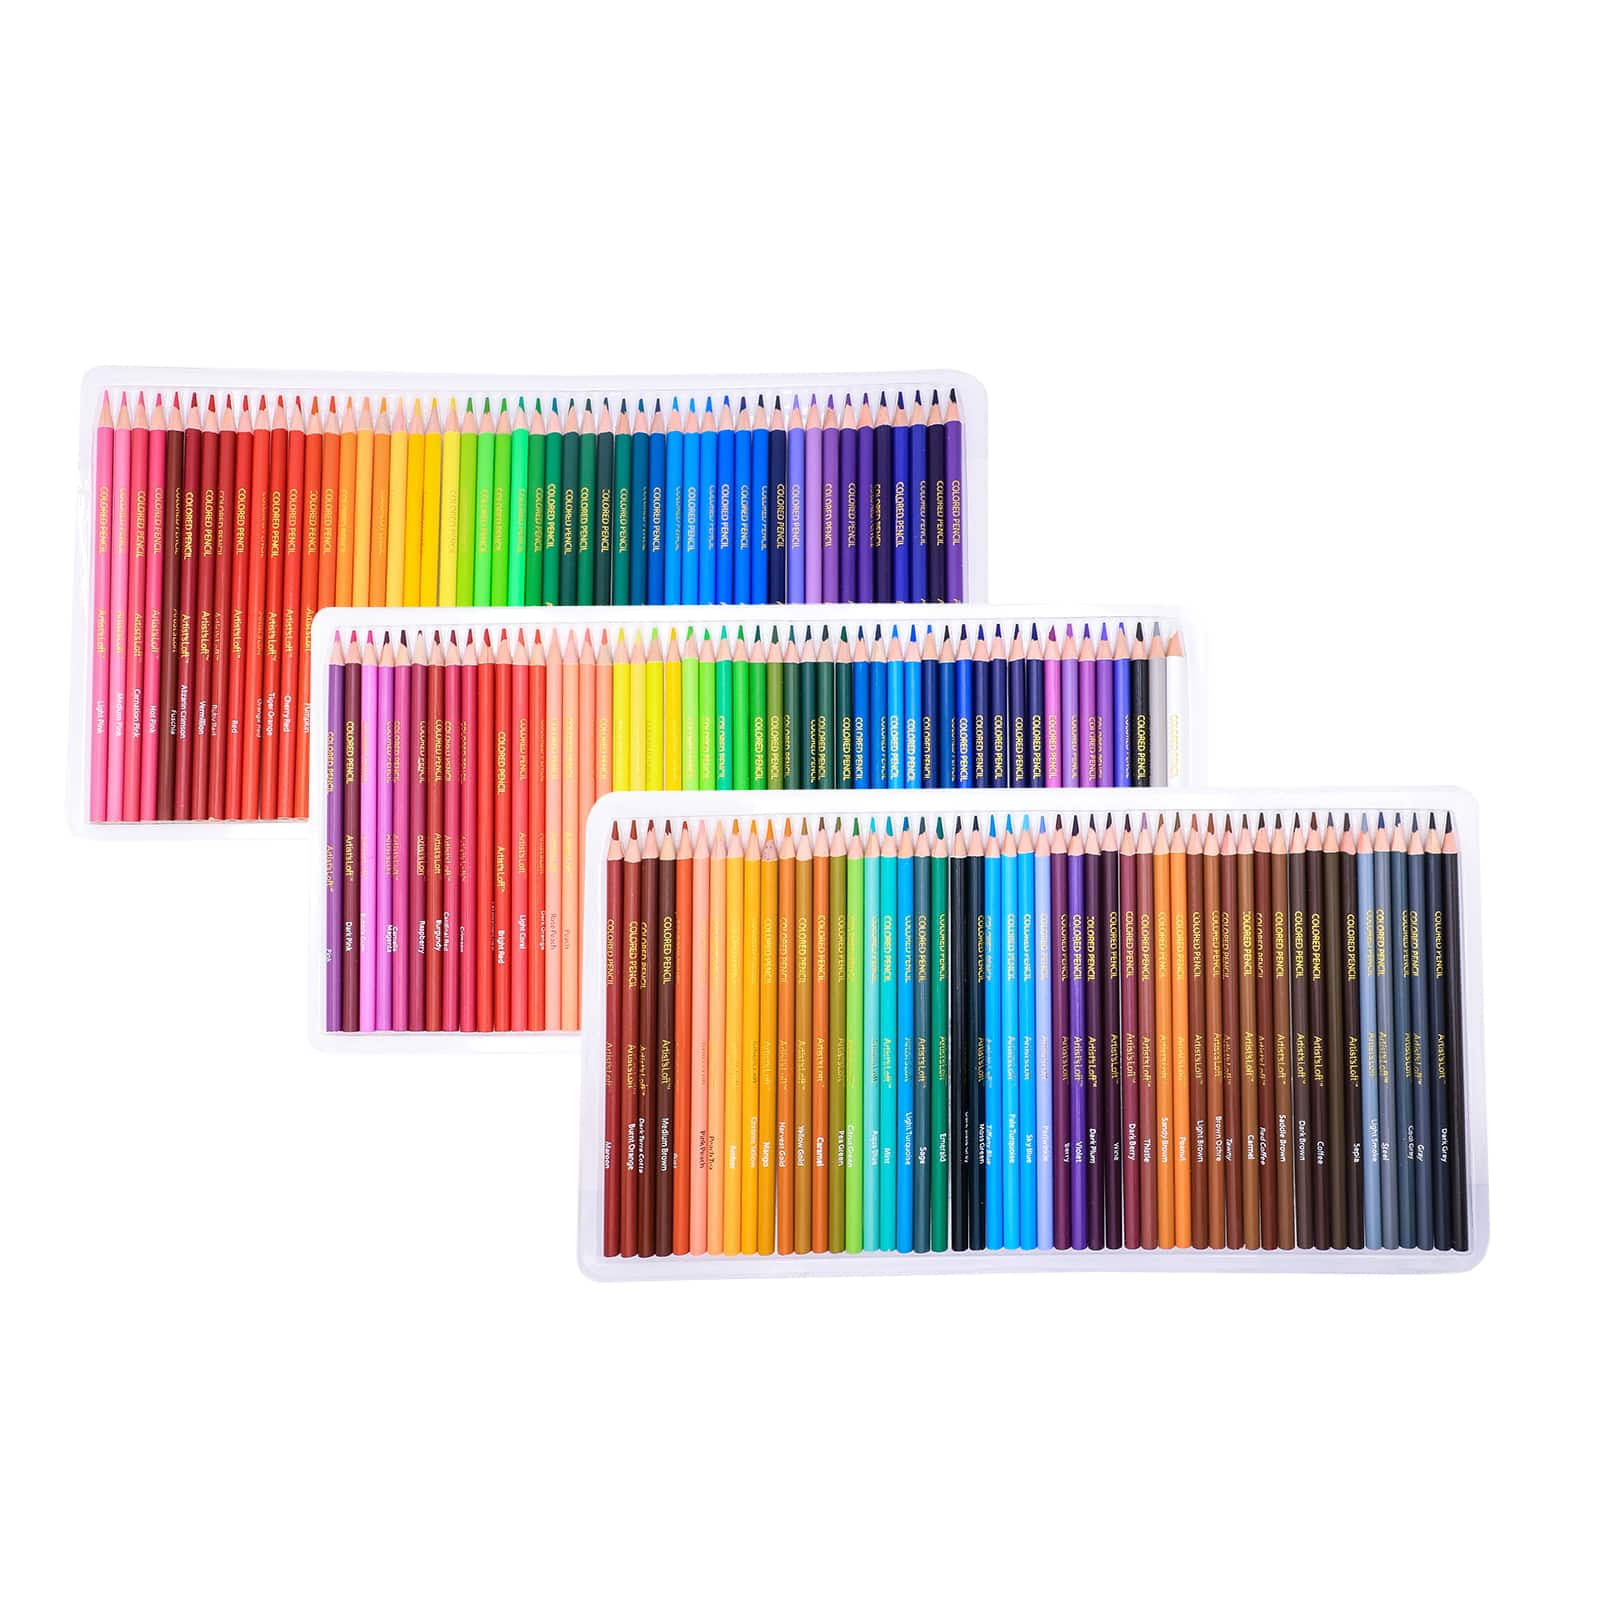 Soucolor 180 Colored Pencils Set Review